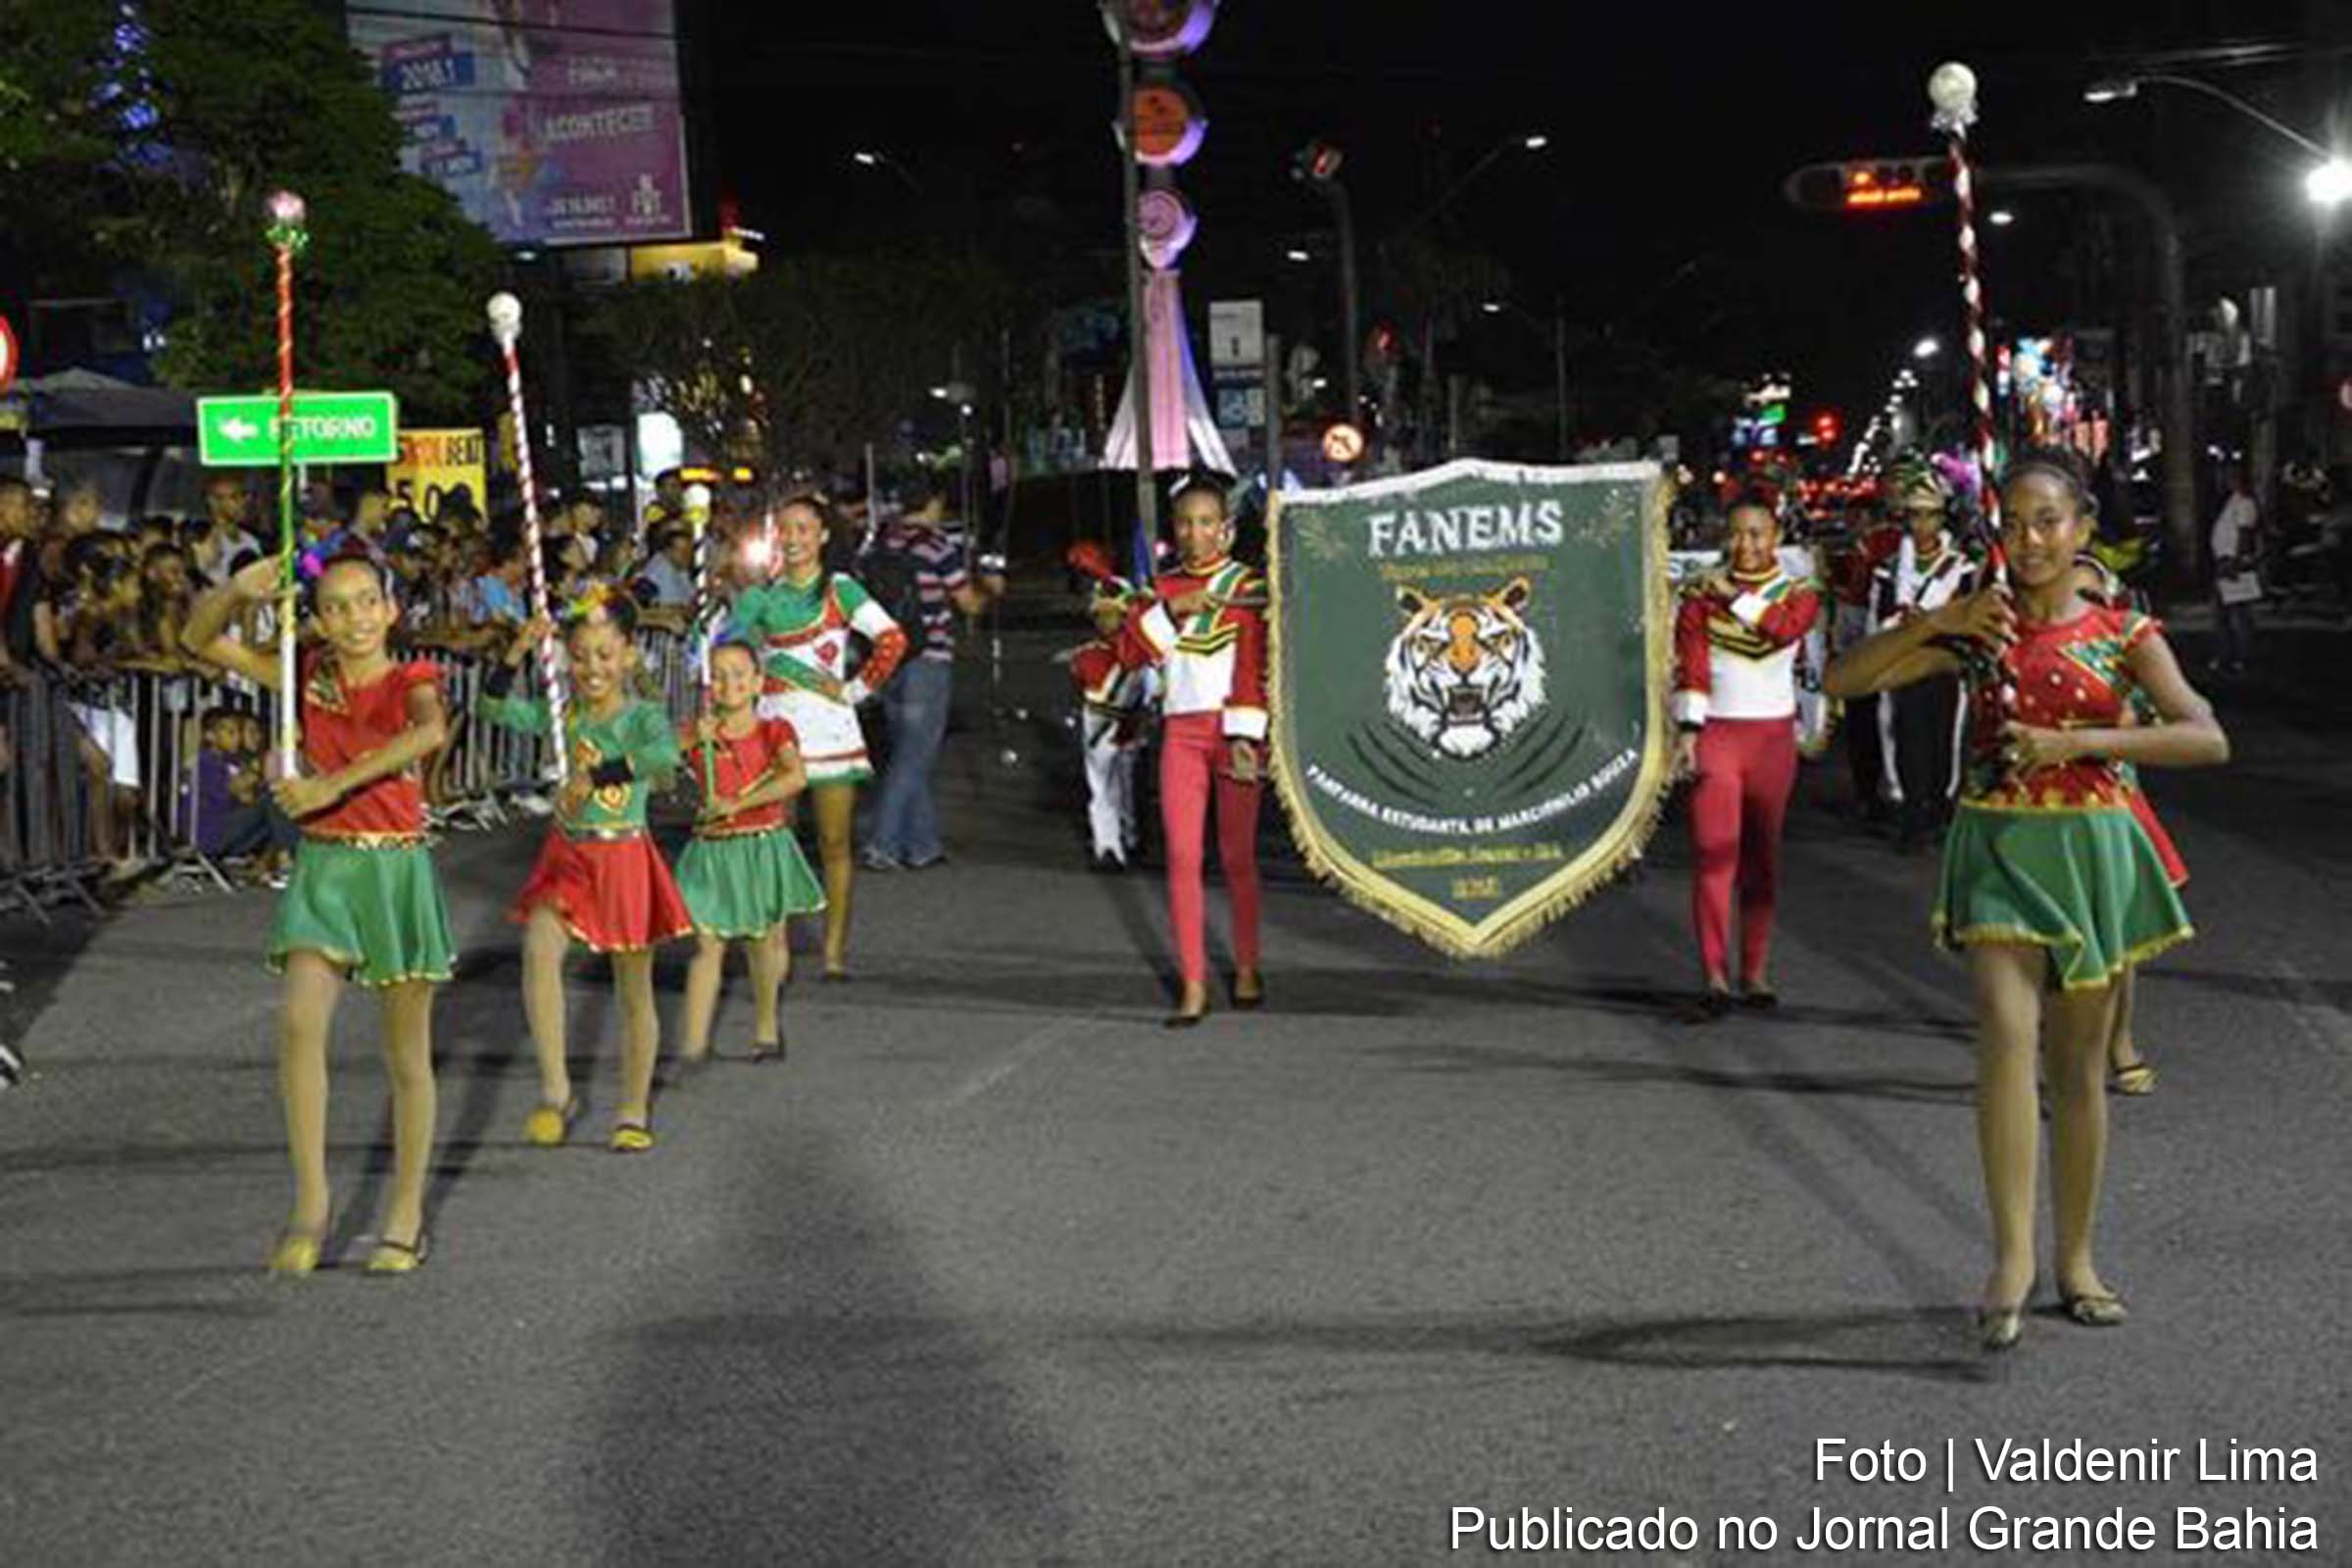 Terceira etapa do XV Torneio Intermunicipal de Bandas e Fanfarras realizada em Feira de Santana.